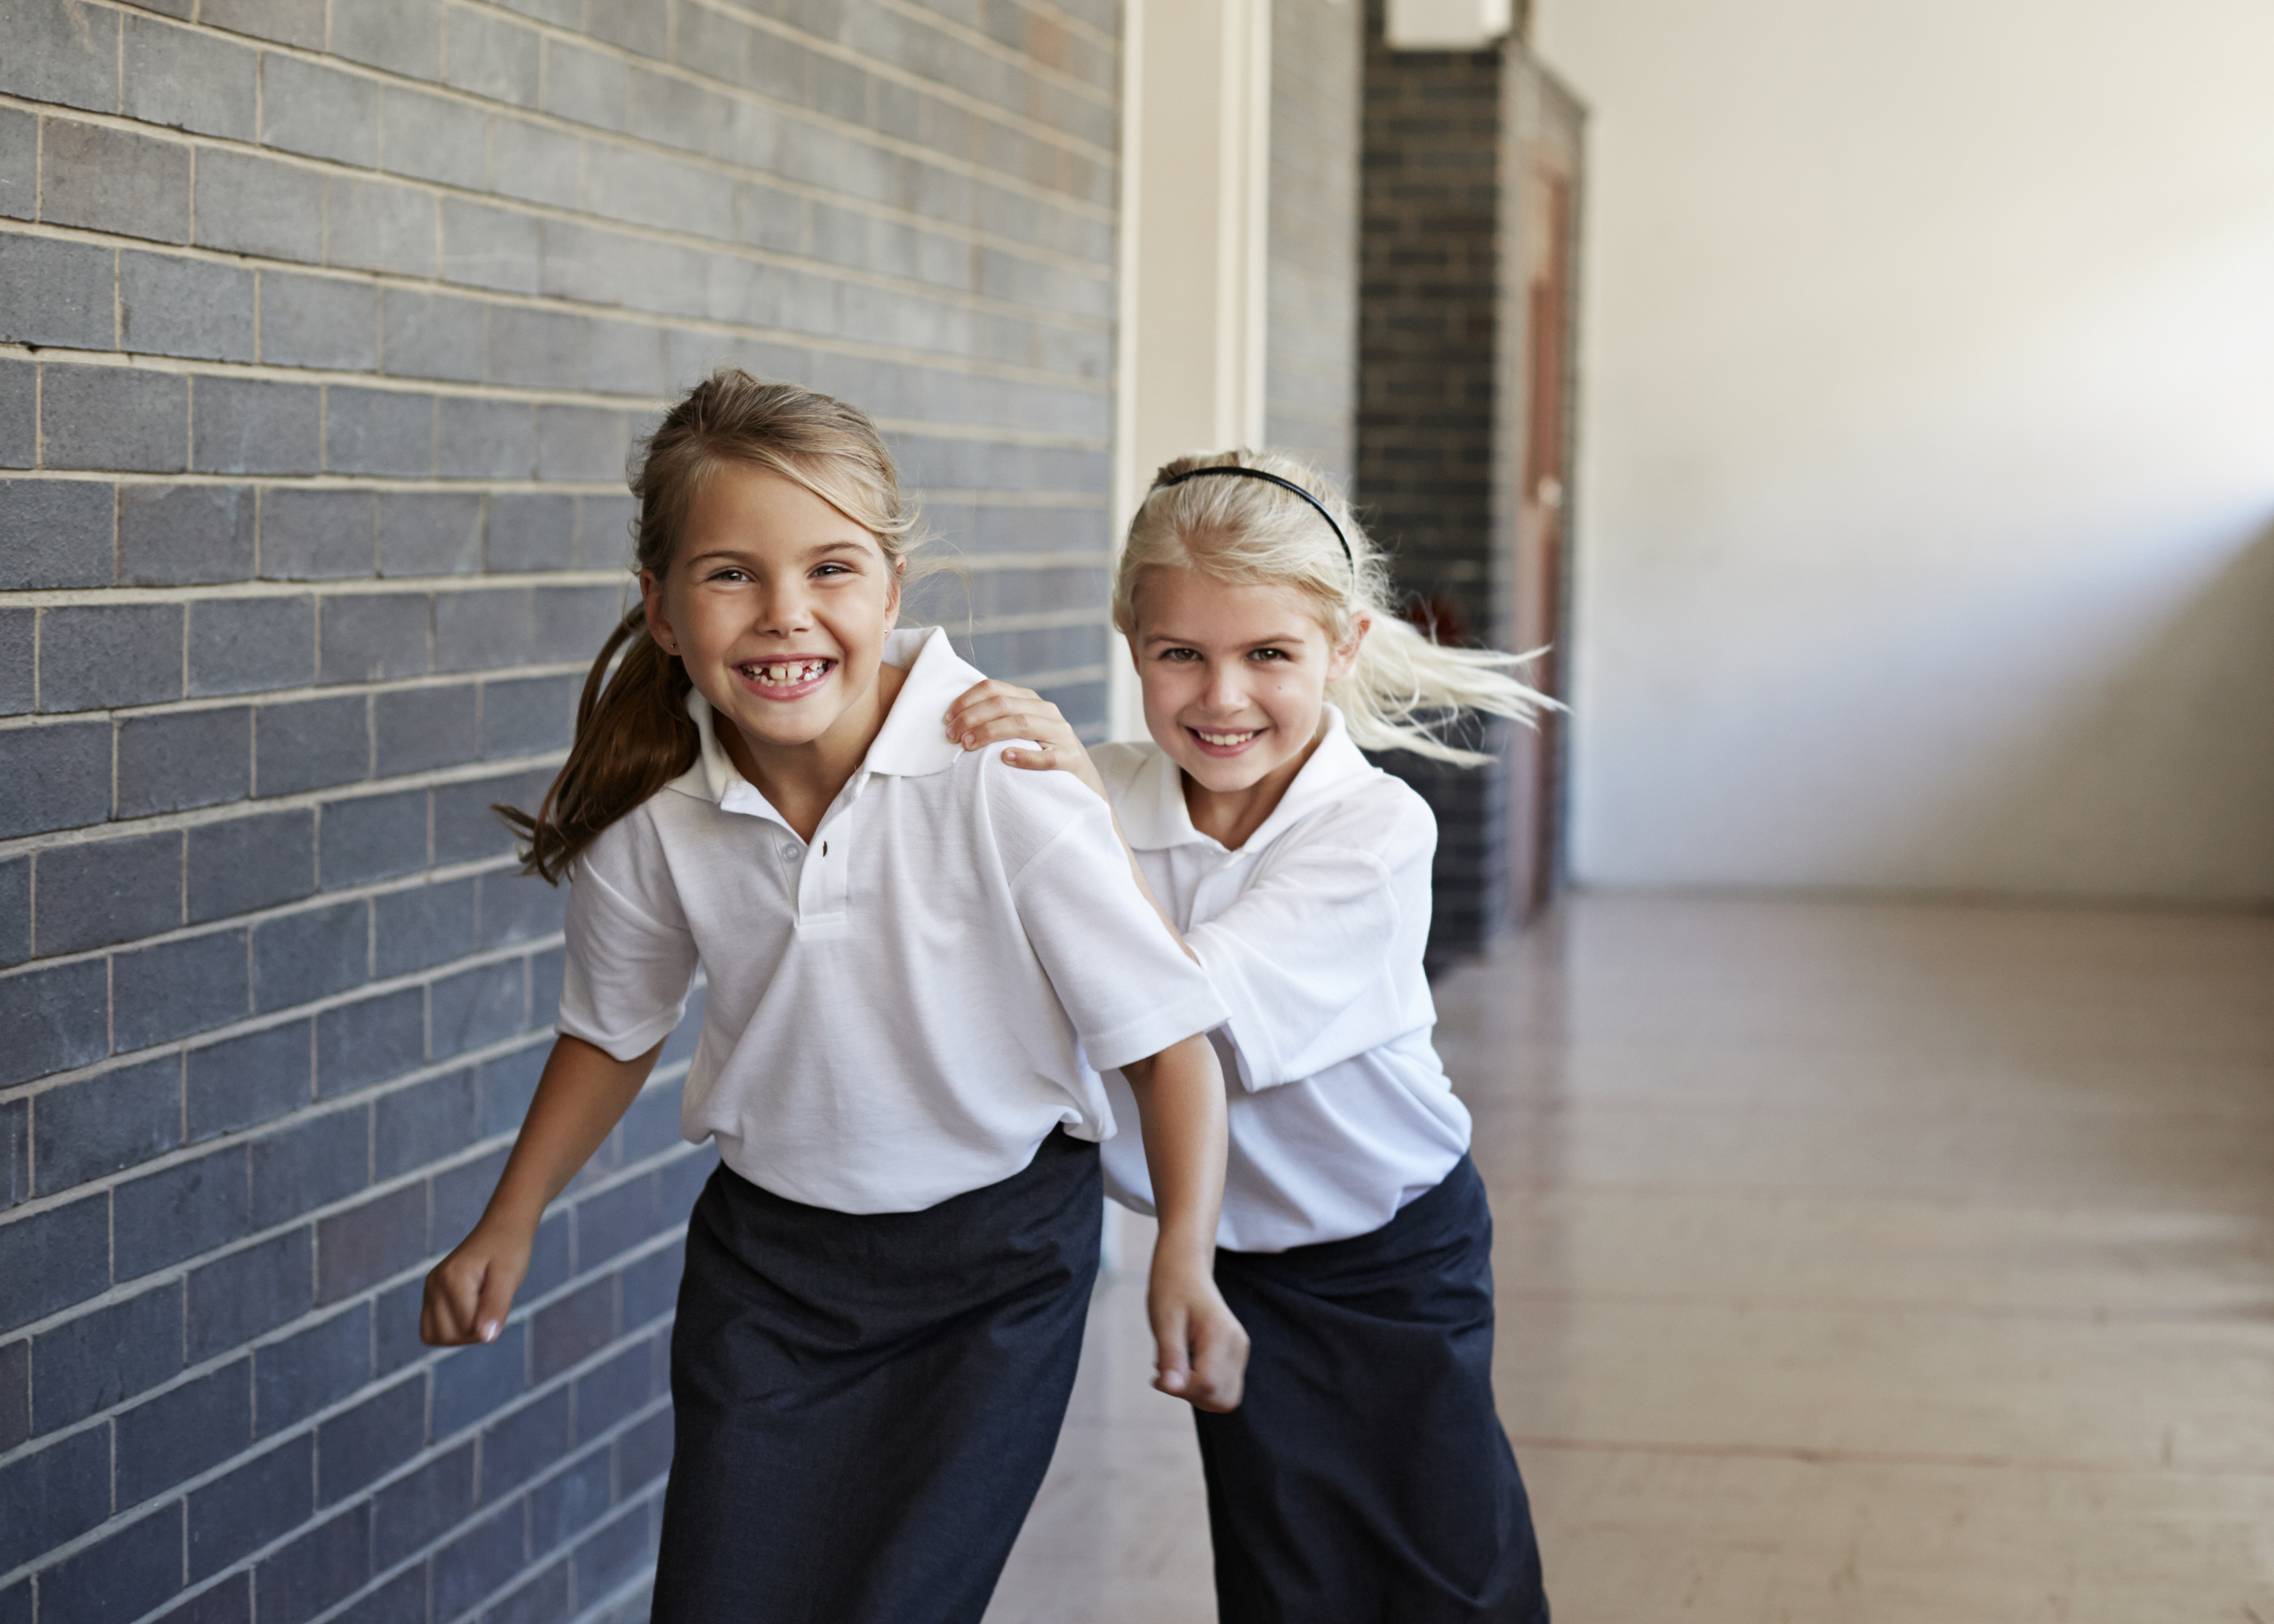 Schoolgirls running &  having fun in a corridor